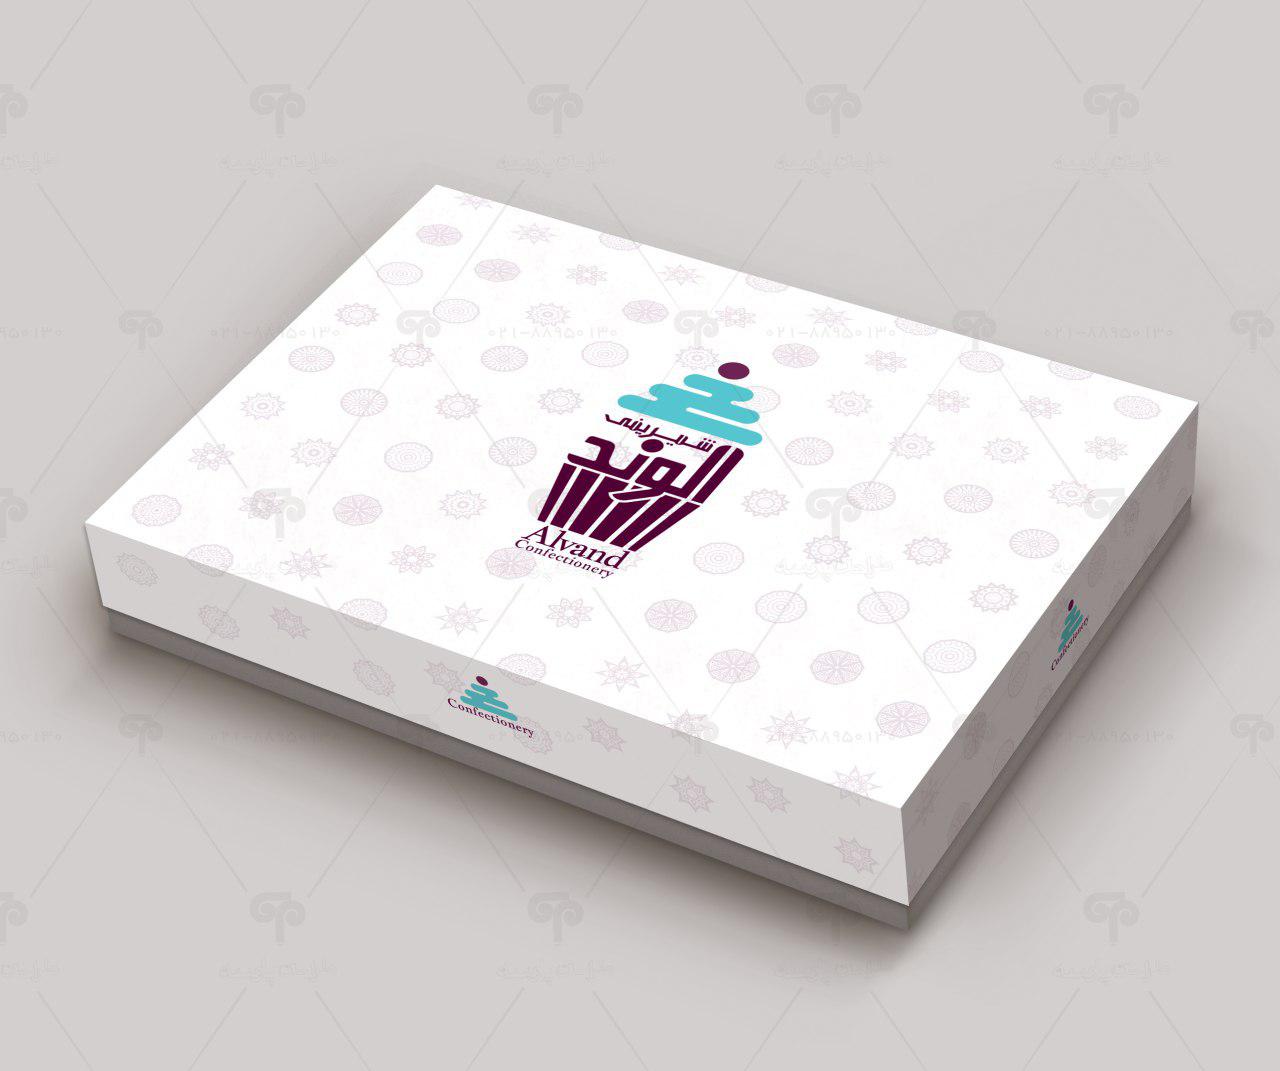 طراحی جعبه شیرینی الوند